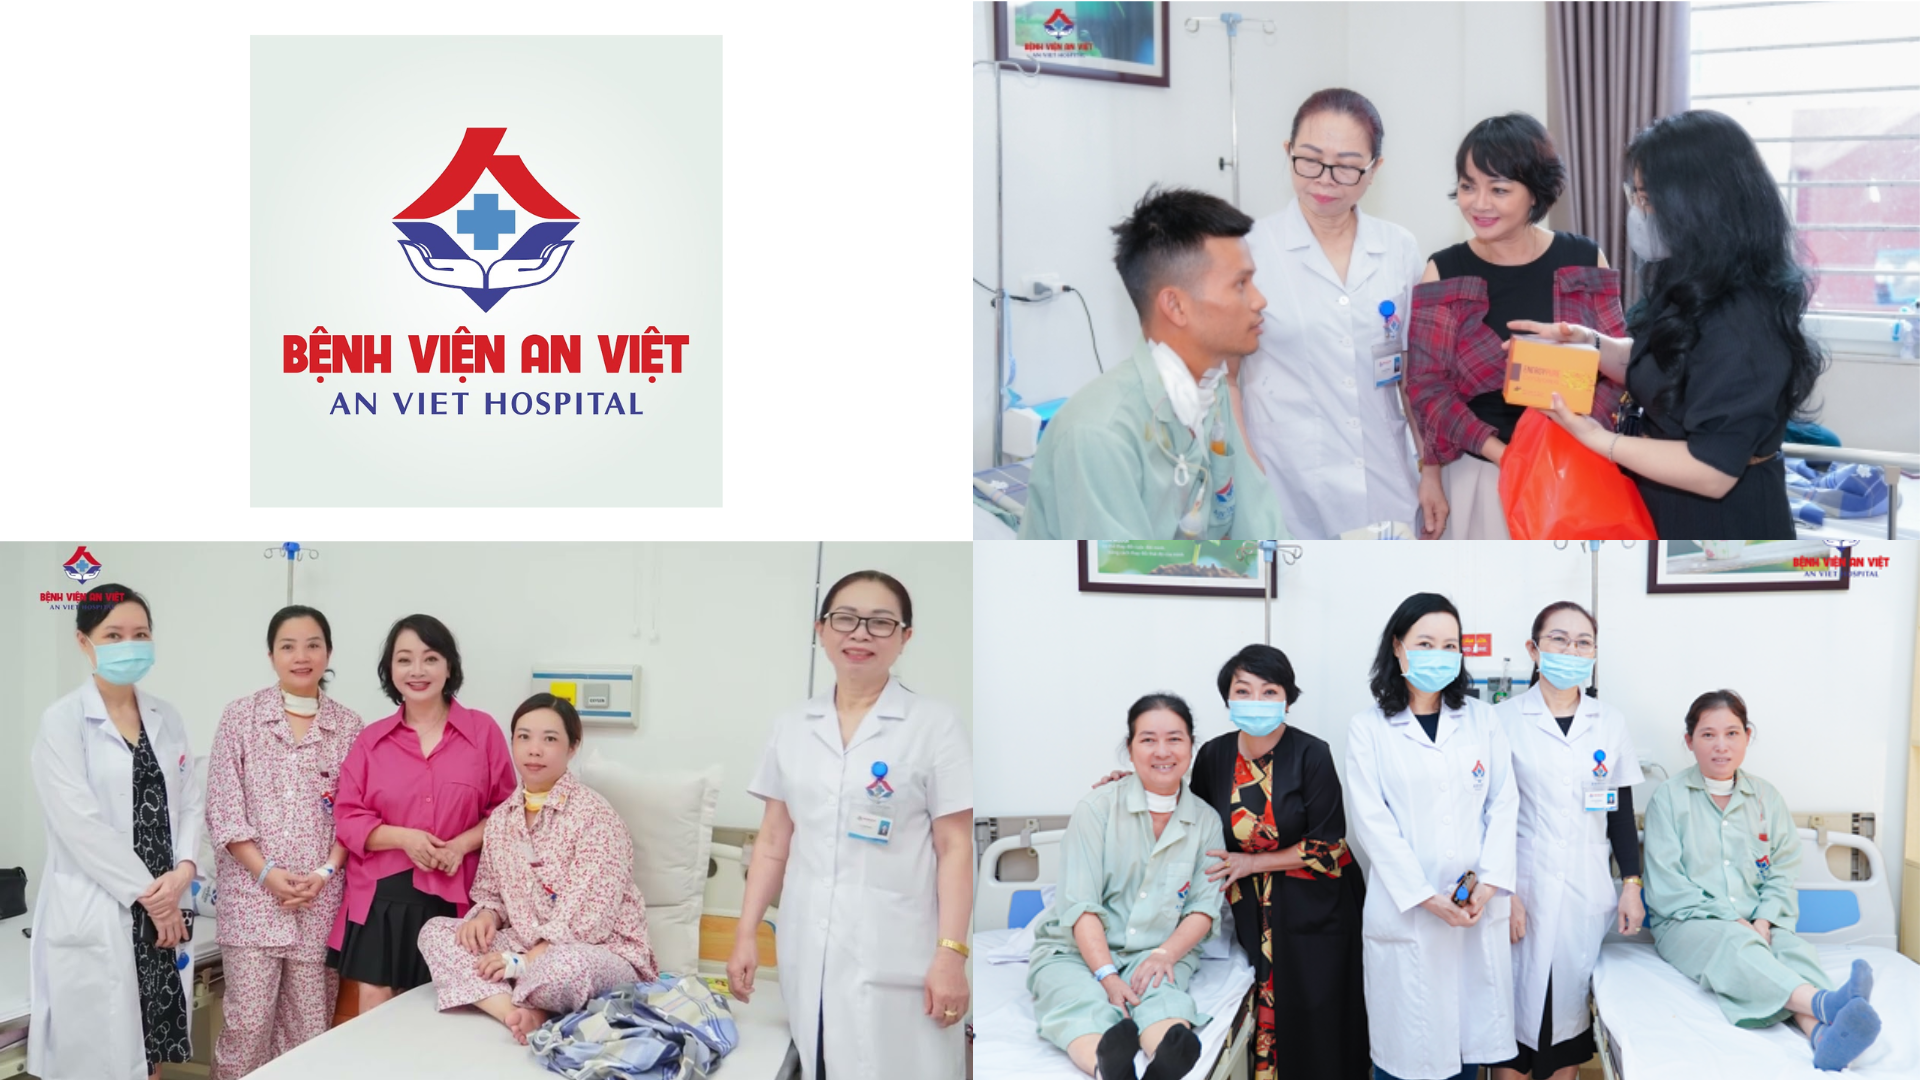 Quyền lợi bảo lãnh viện phí tại Bệnh viện An Việt